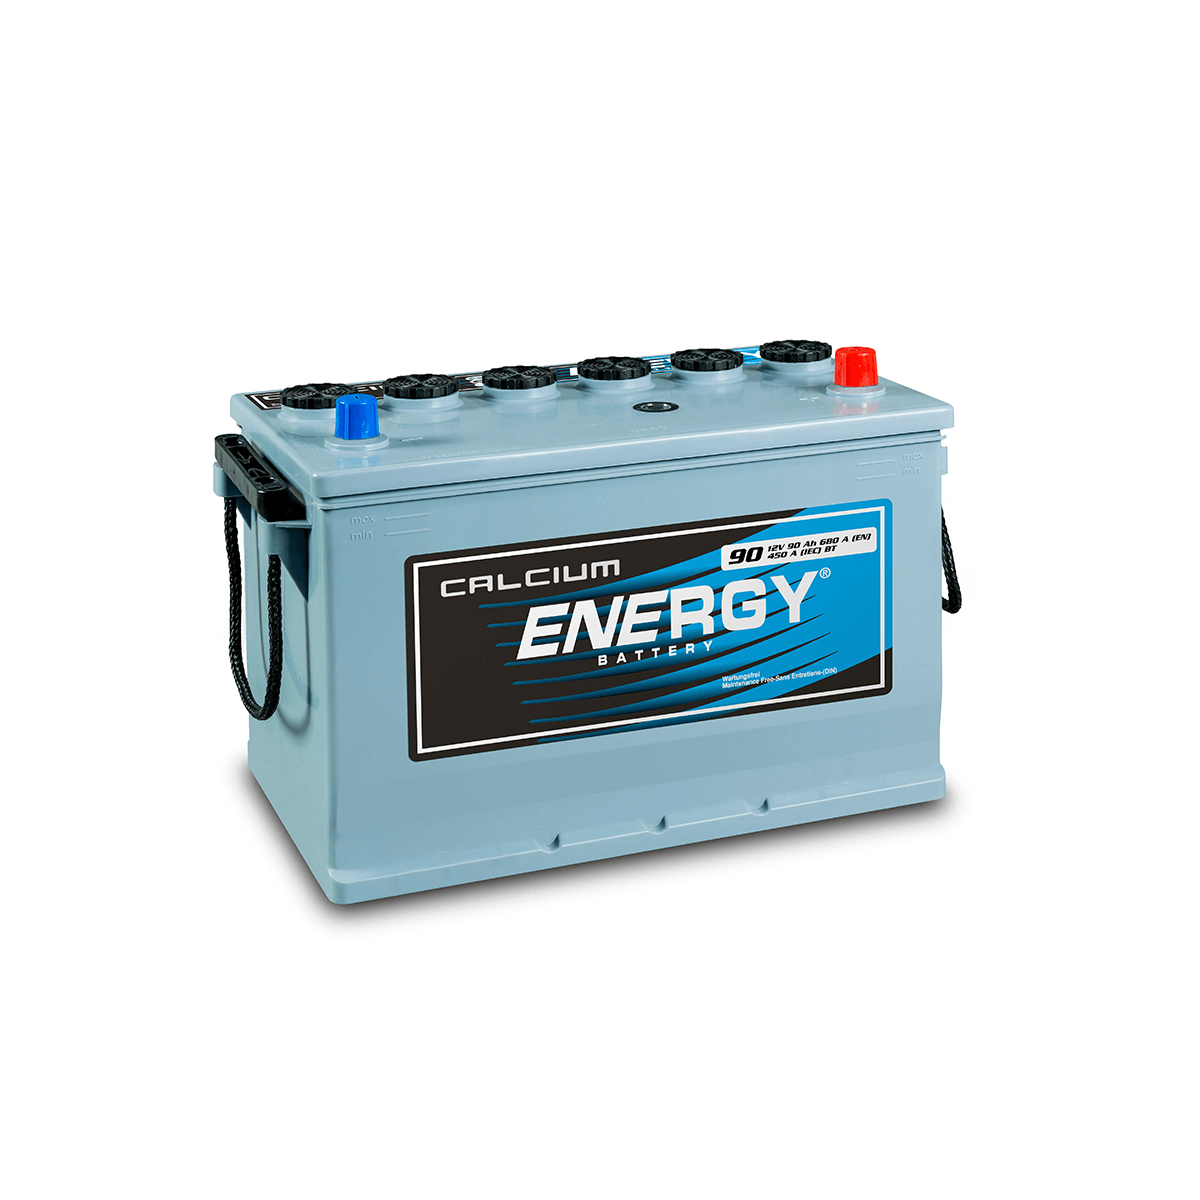 Energy batteries. Аккумуляторы старт Энерджи. Alimas Energy аккумуляторы. Energy Max аккумулятор для автомобиля. Аккумулятор батареи Энерджи 50 л.